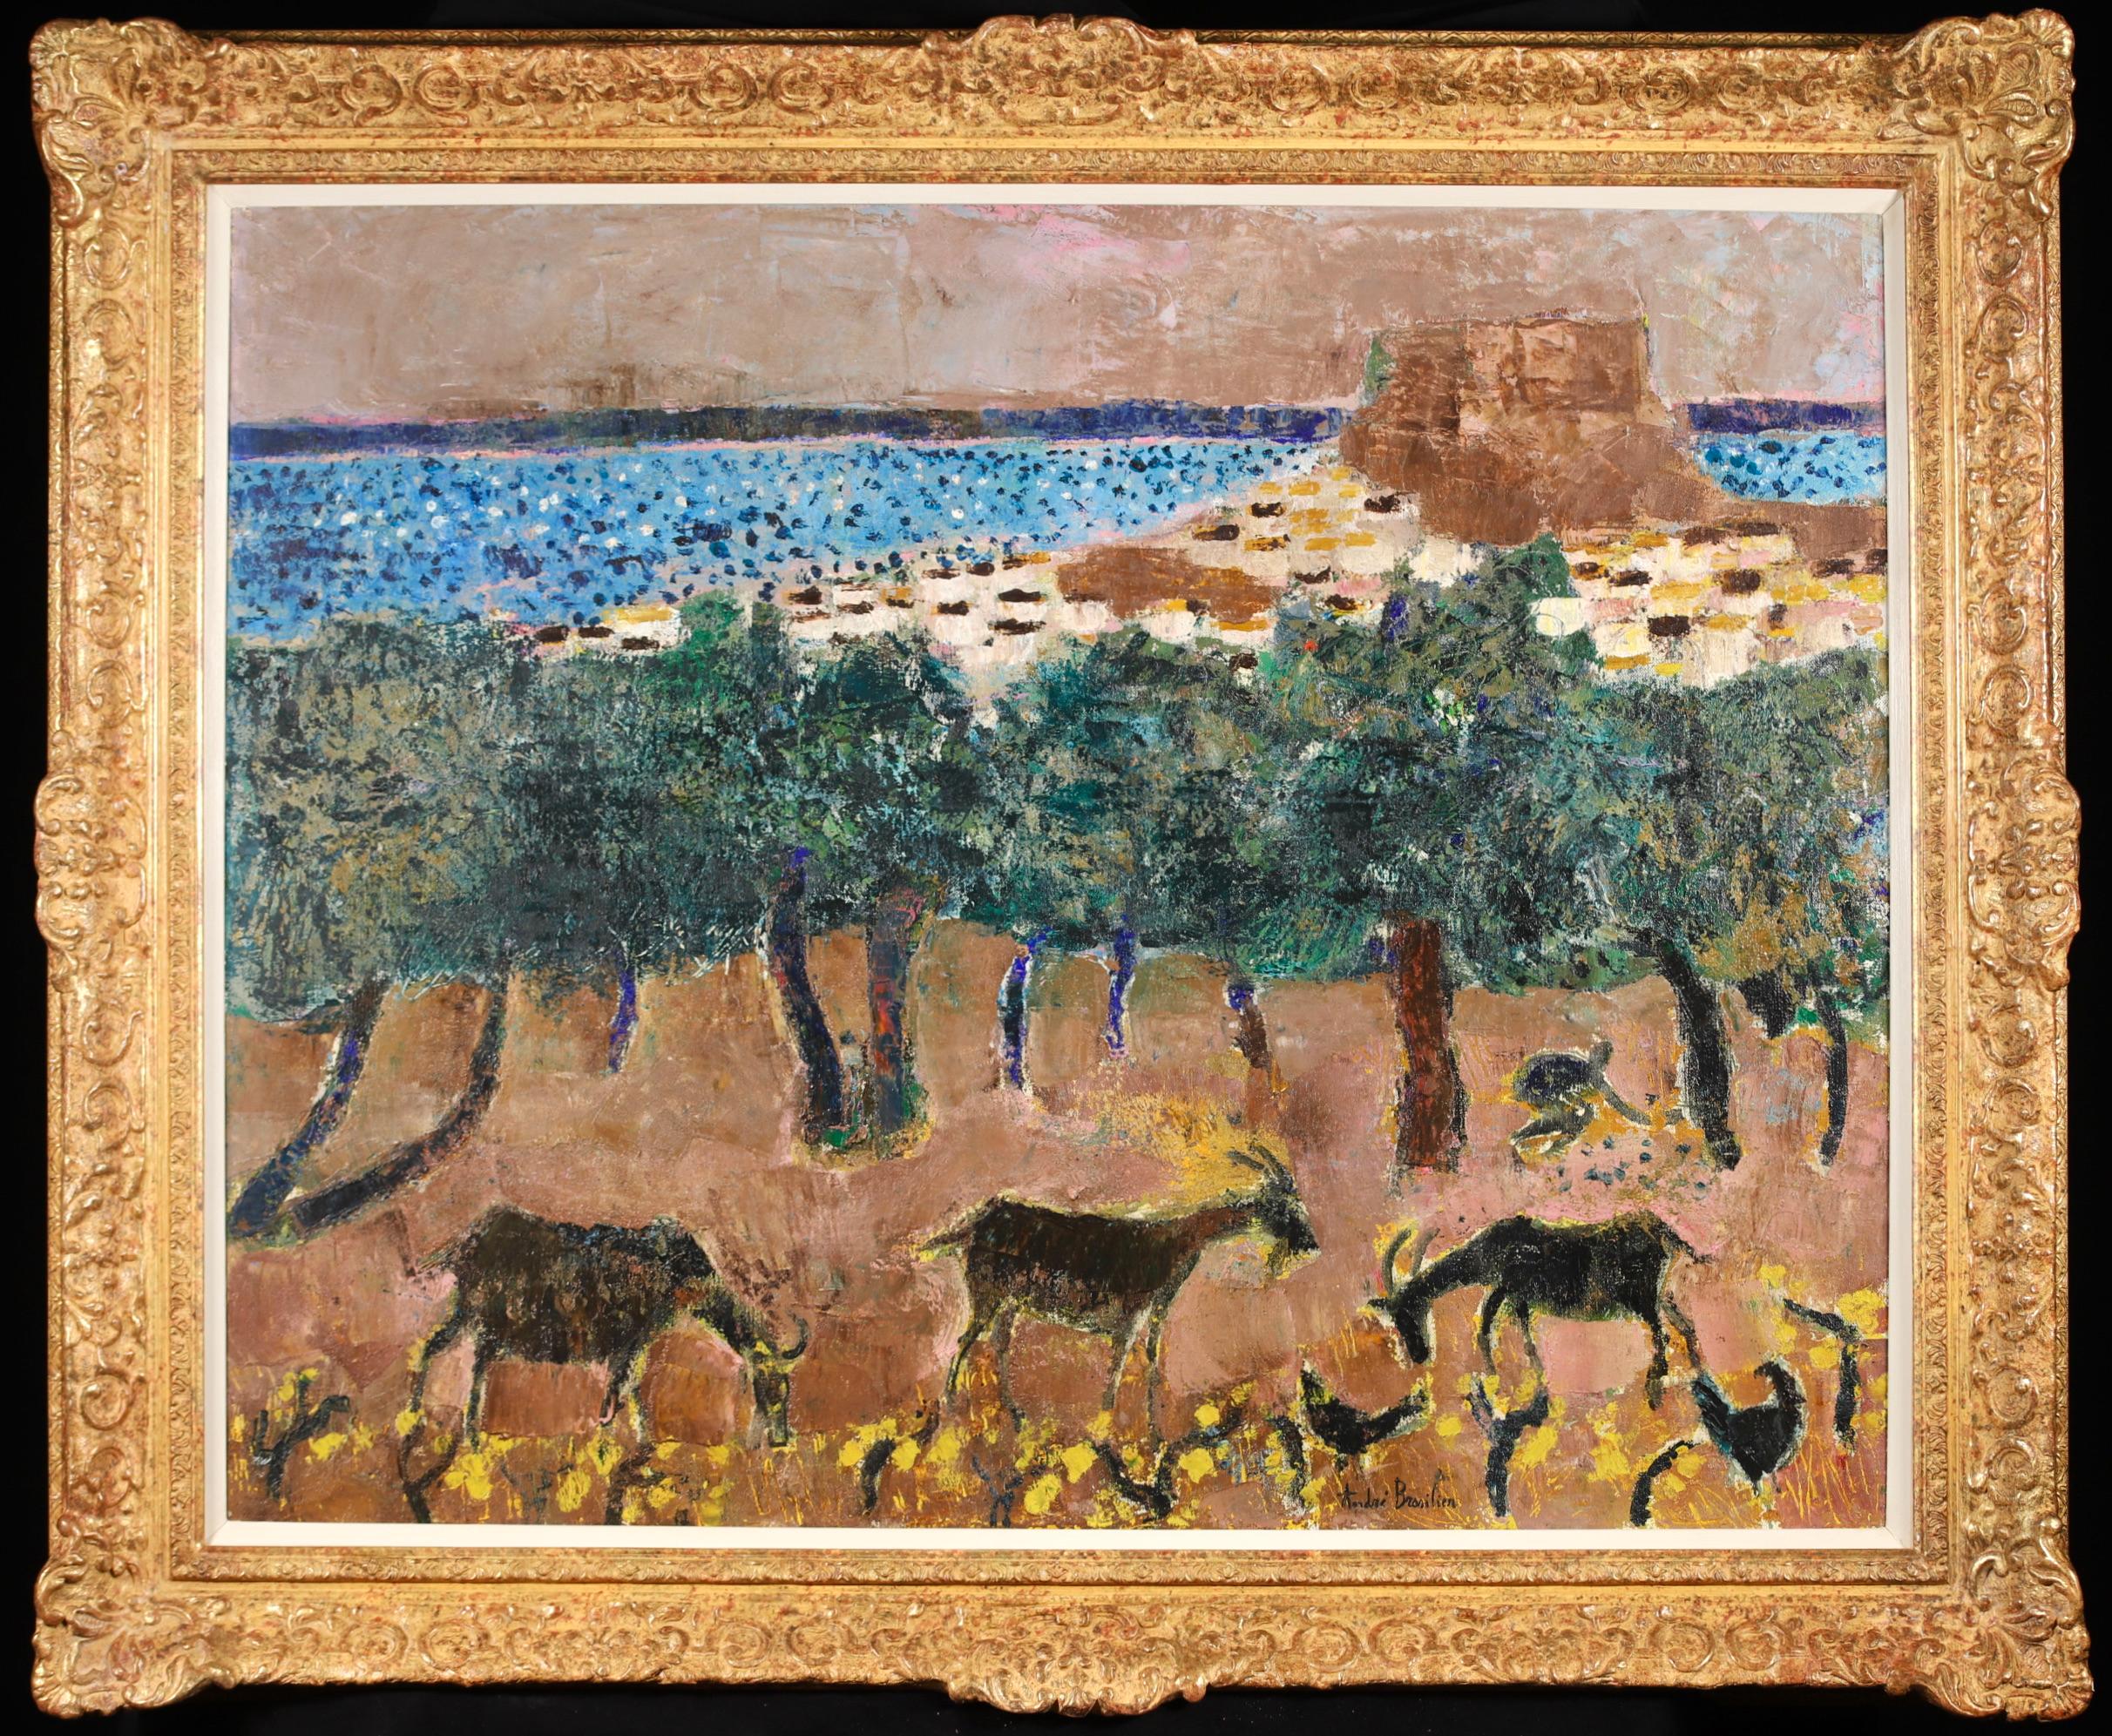 Huile sur toile signée animaux dans un paysage par le peintre expressionniste français Andre Brasilier. L'œuvre représente des chèvres et des oiseaux devant des arbres verts et une mer bleue au-delà. Cette œuvre de jeunesse a été peinte par